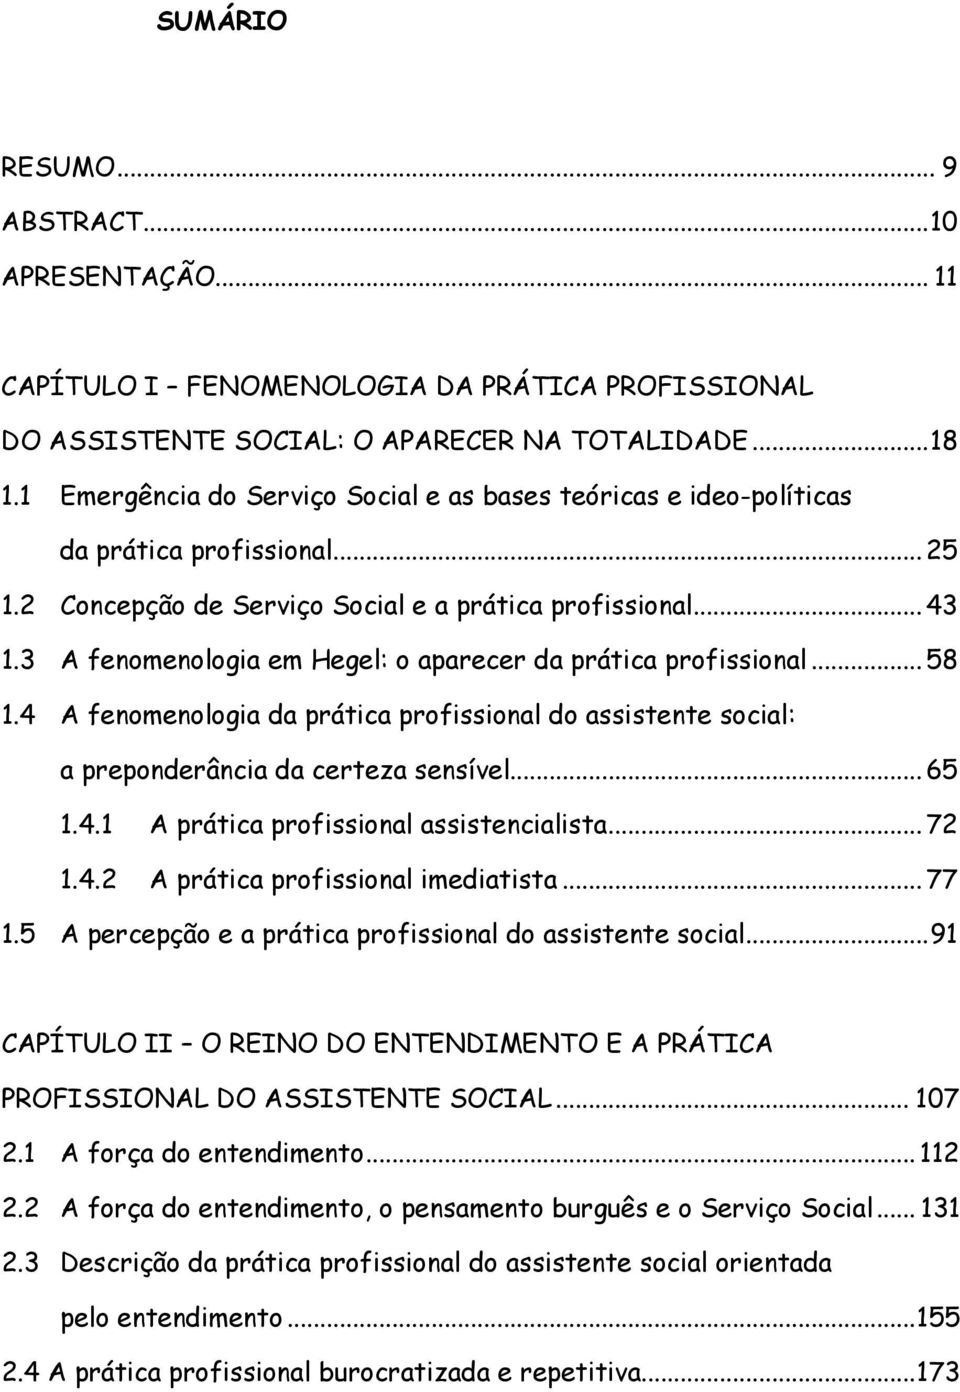 3 A fenomenologia em Hegel: o aparecer da prática profissional...58 1.4 A fenomenologia da prática profissional do assistente social: a preponderância da certeza sensível...65 1.4.1 A prática profissional assistencialista.